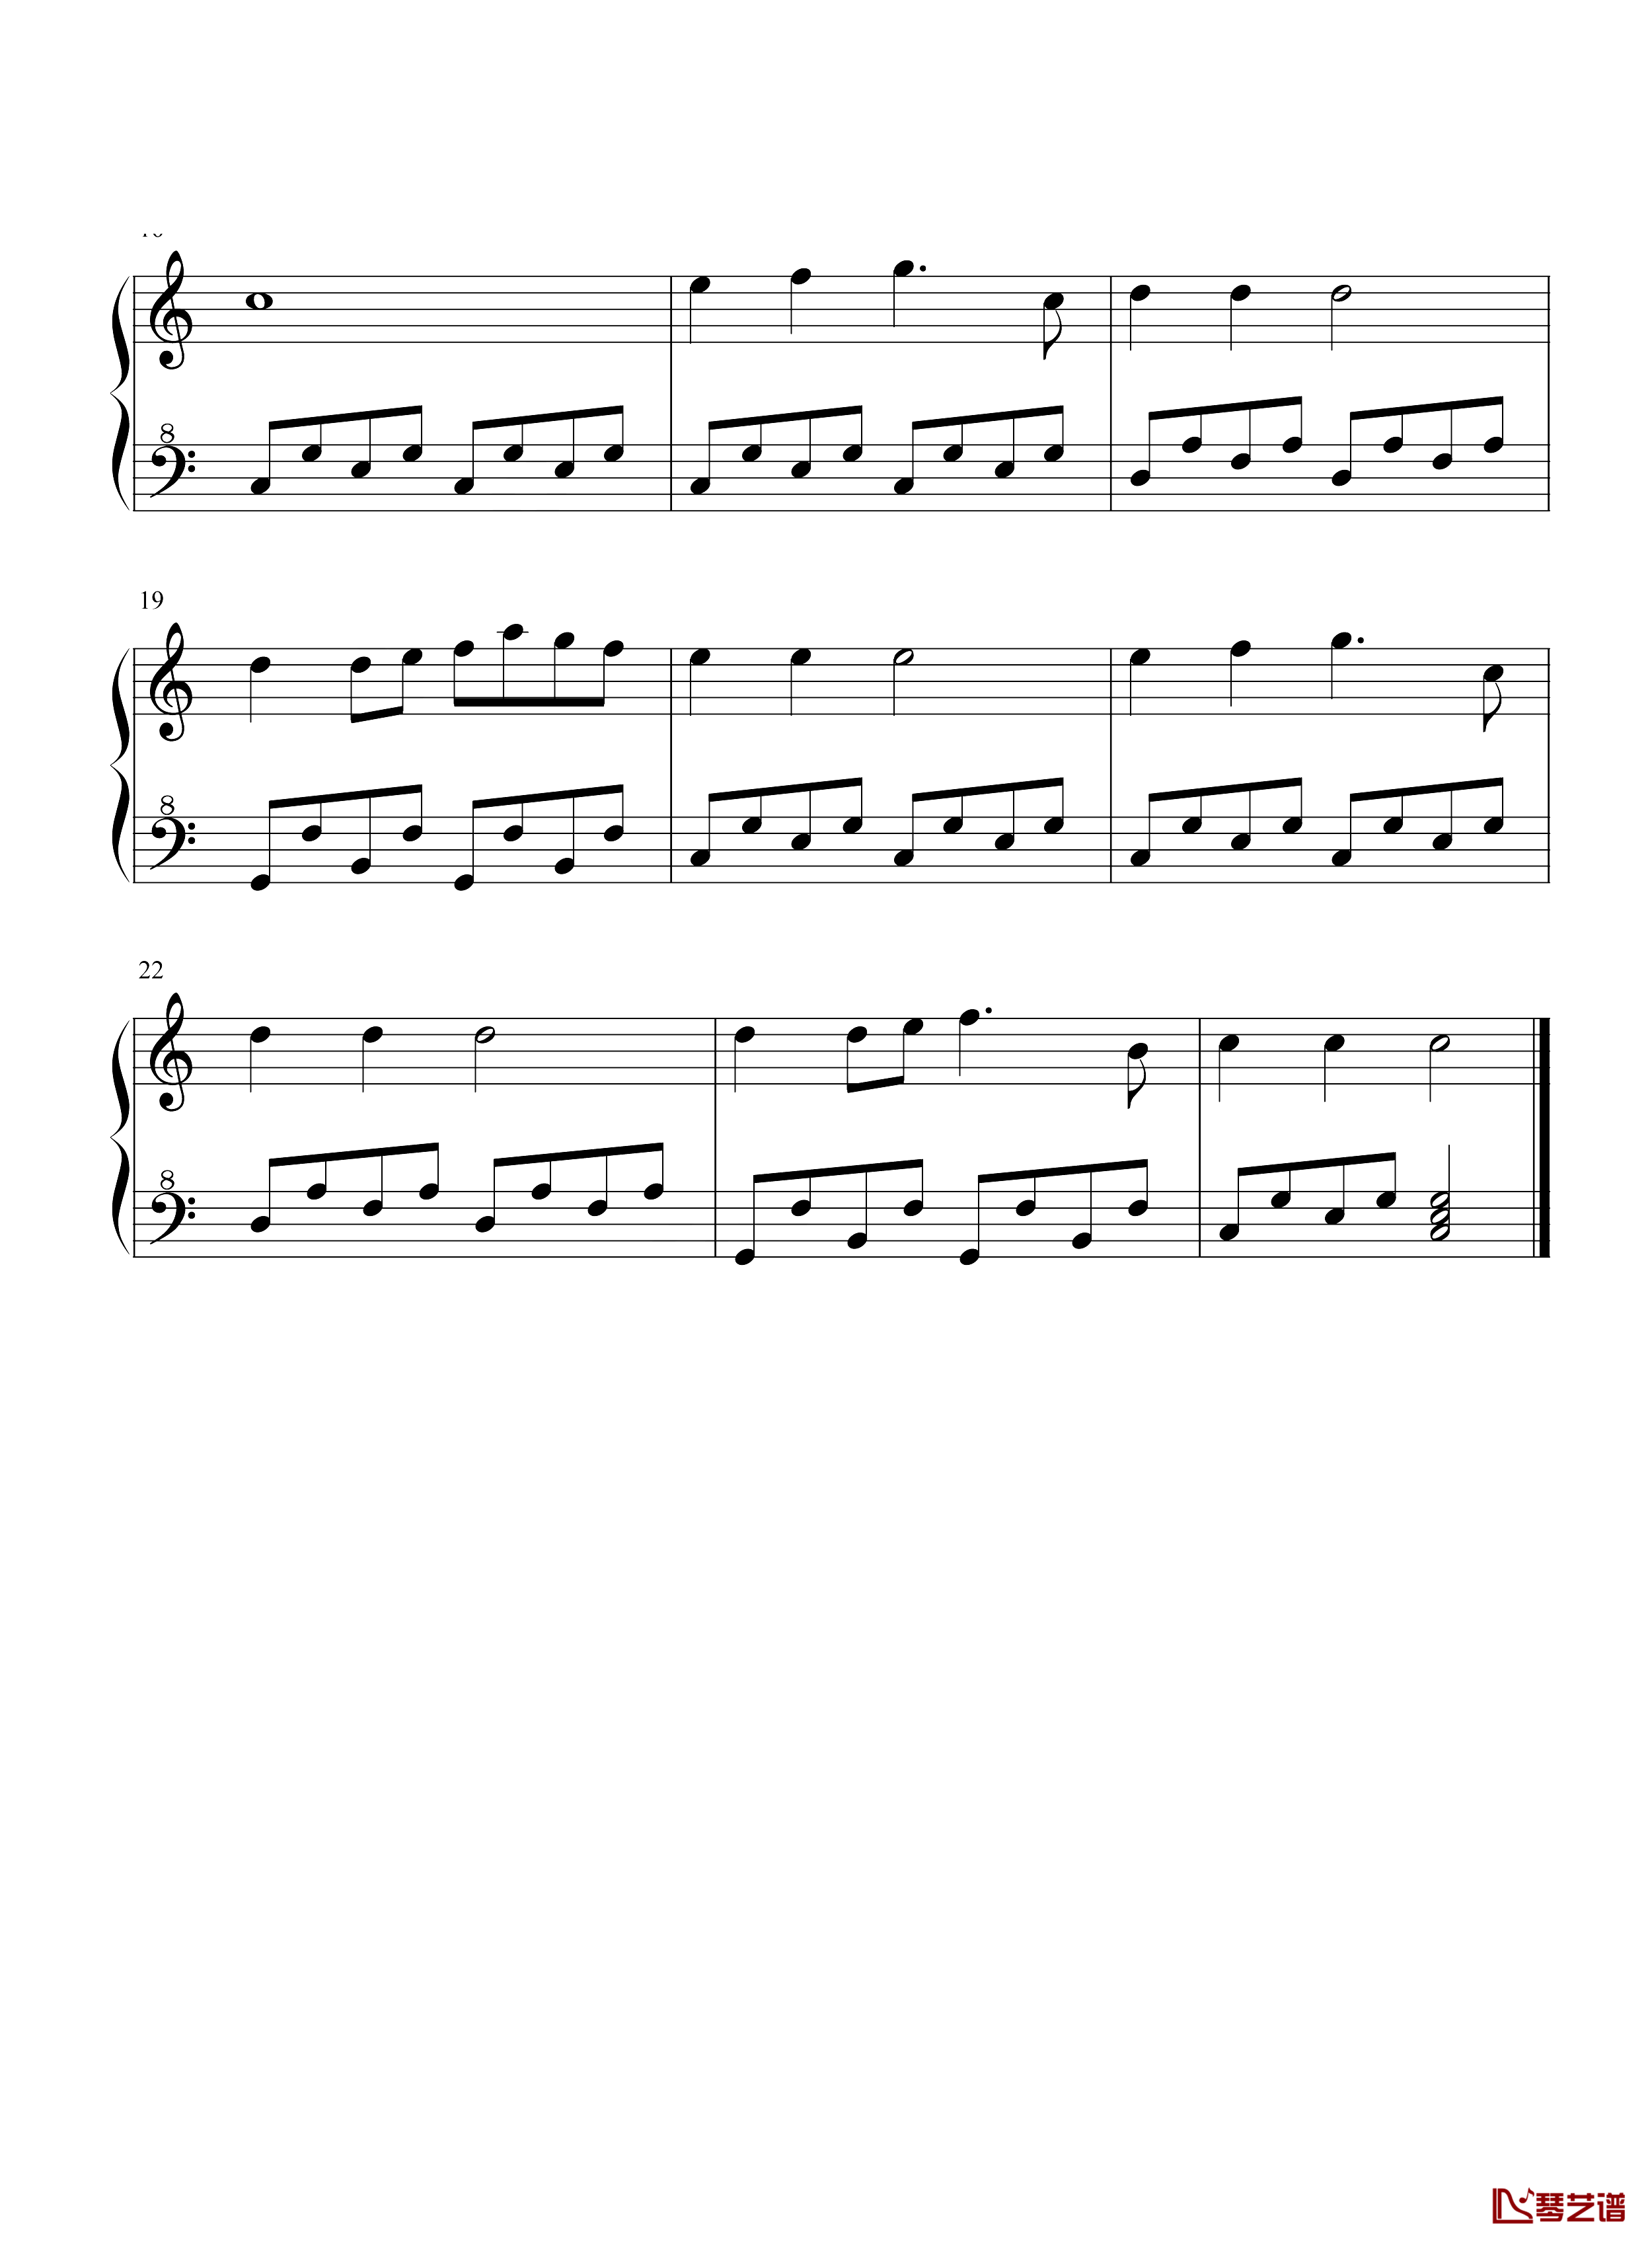 哆啦A梦钢琴谱-简单版-菊池俊辅-如果长大很辛苦，今天我带你回到童年2